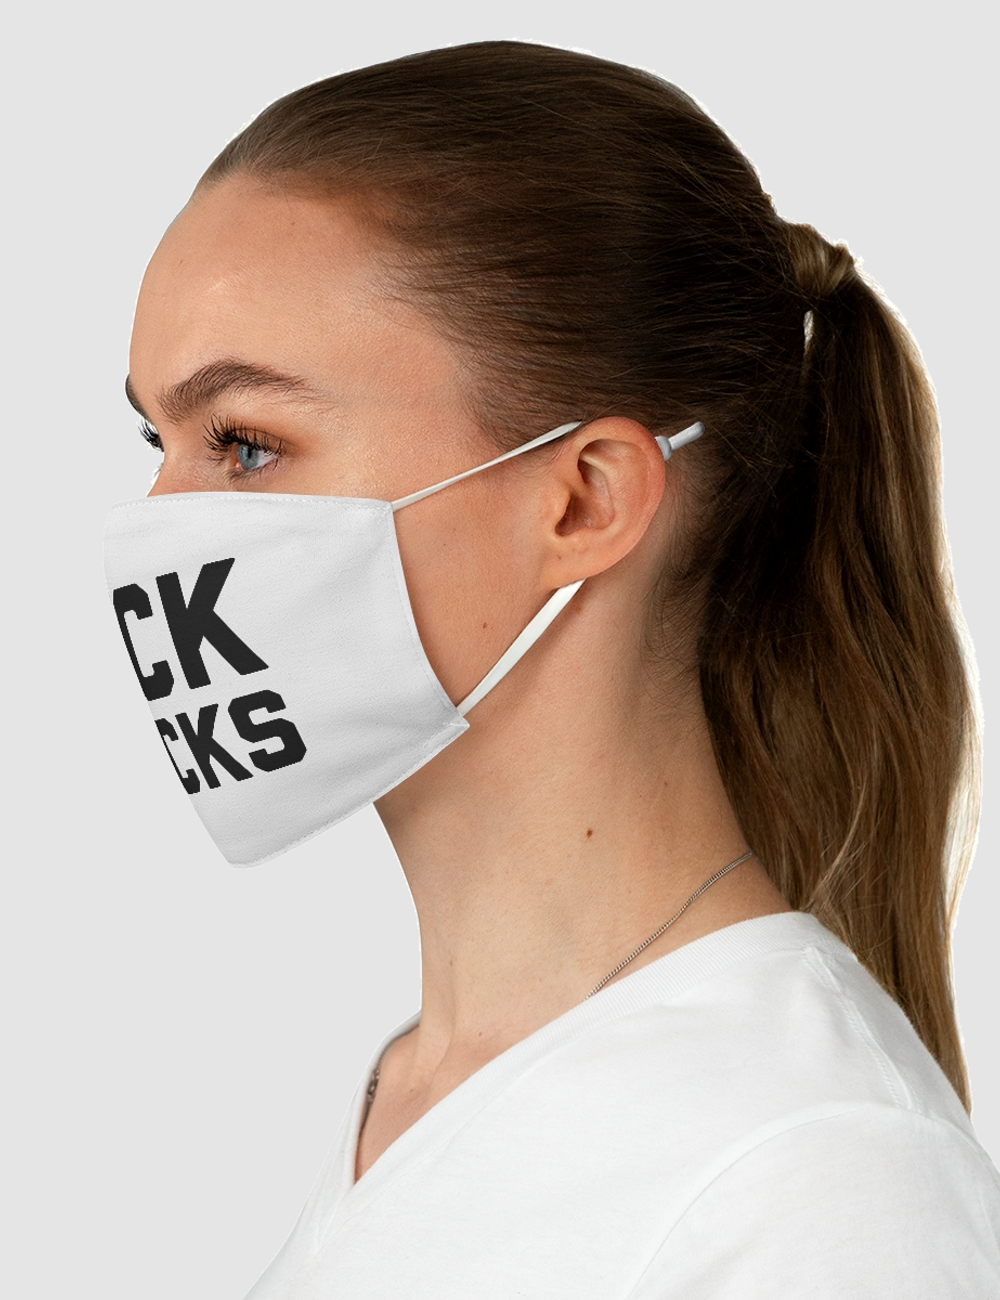 Kick Rocks | Two-Layer Polyester Fabric Face Mask OniTakai